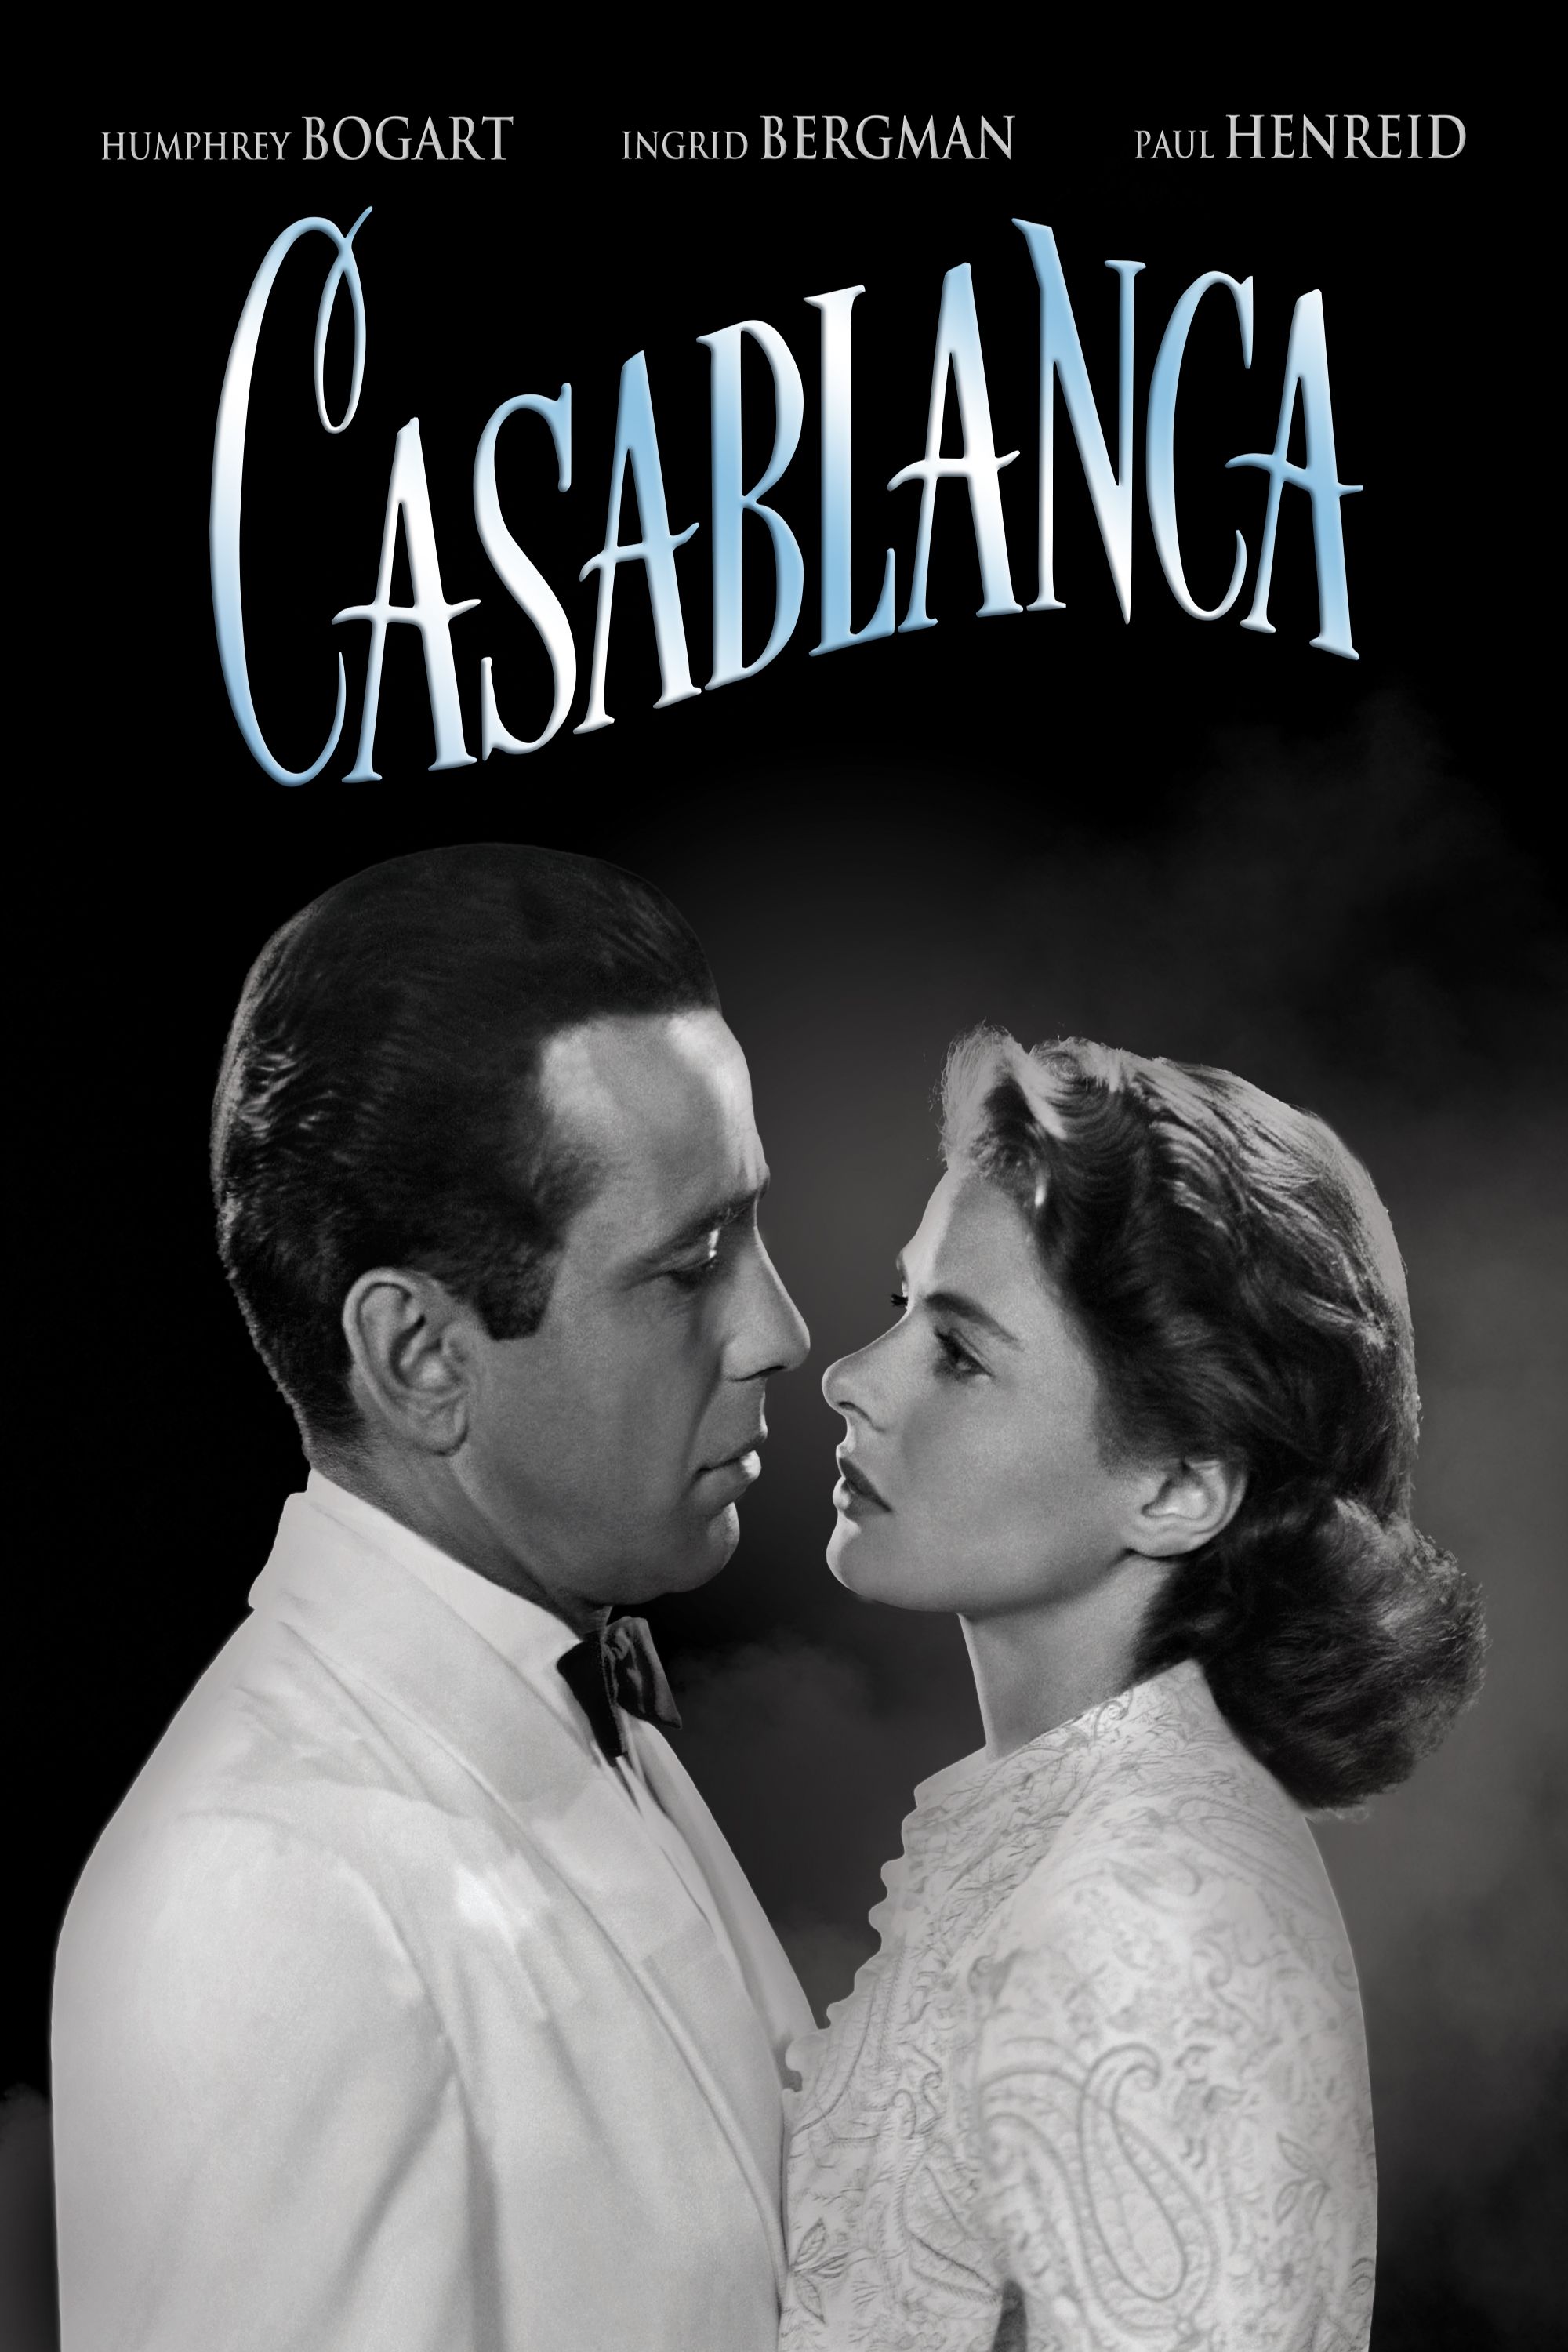 Black sex in Casablanca